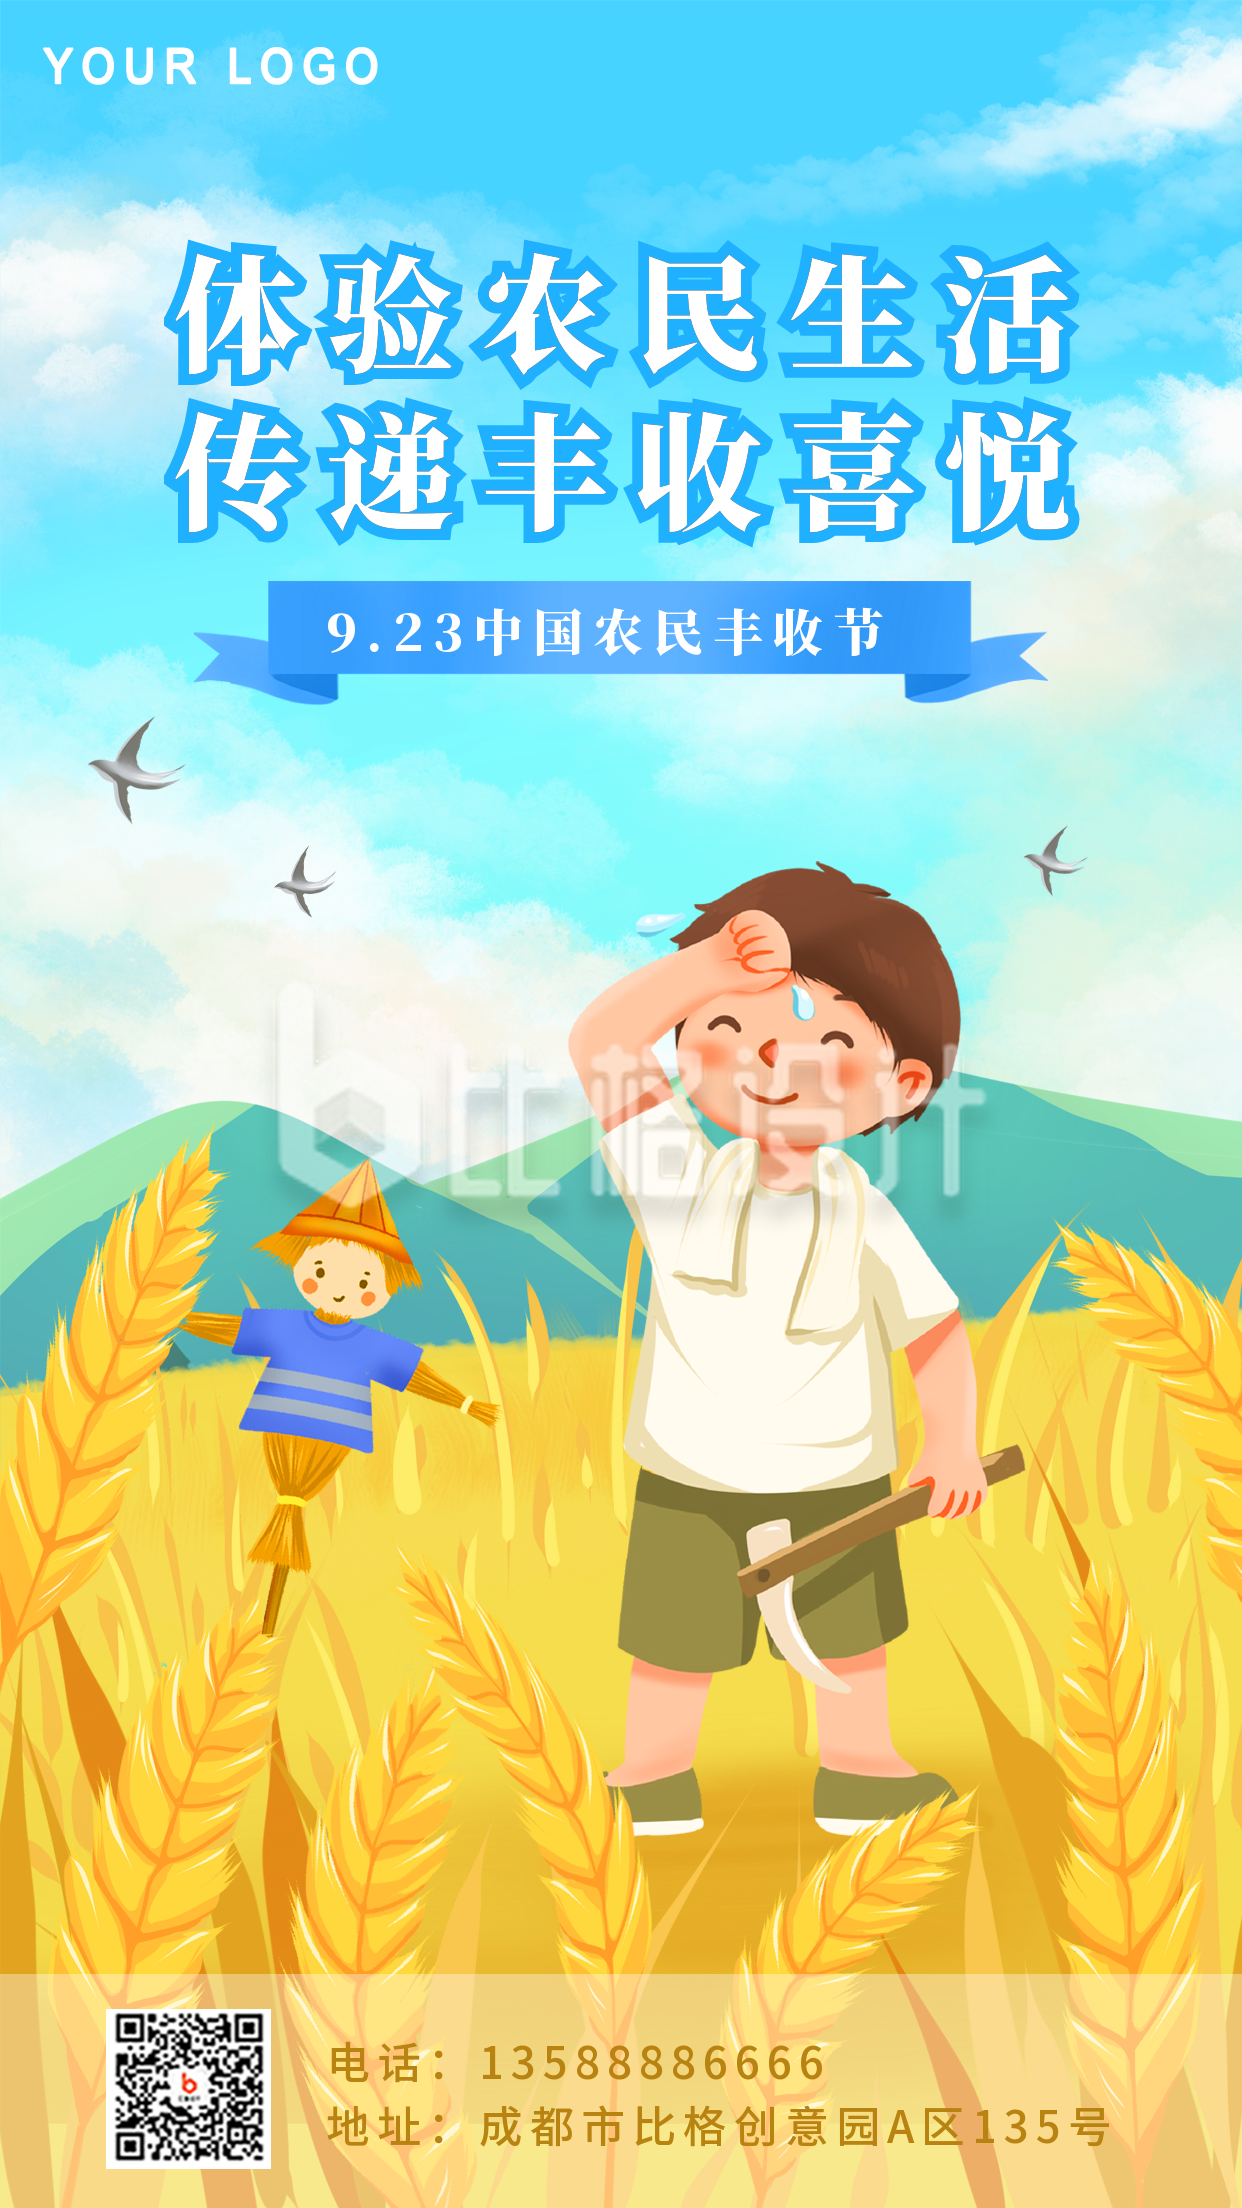 蓝色可爱手绘风中国农民丰收节手机海报